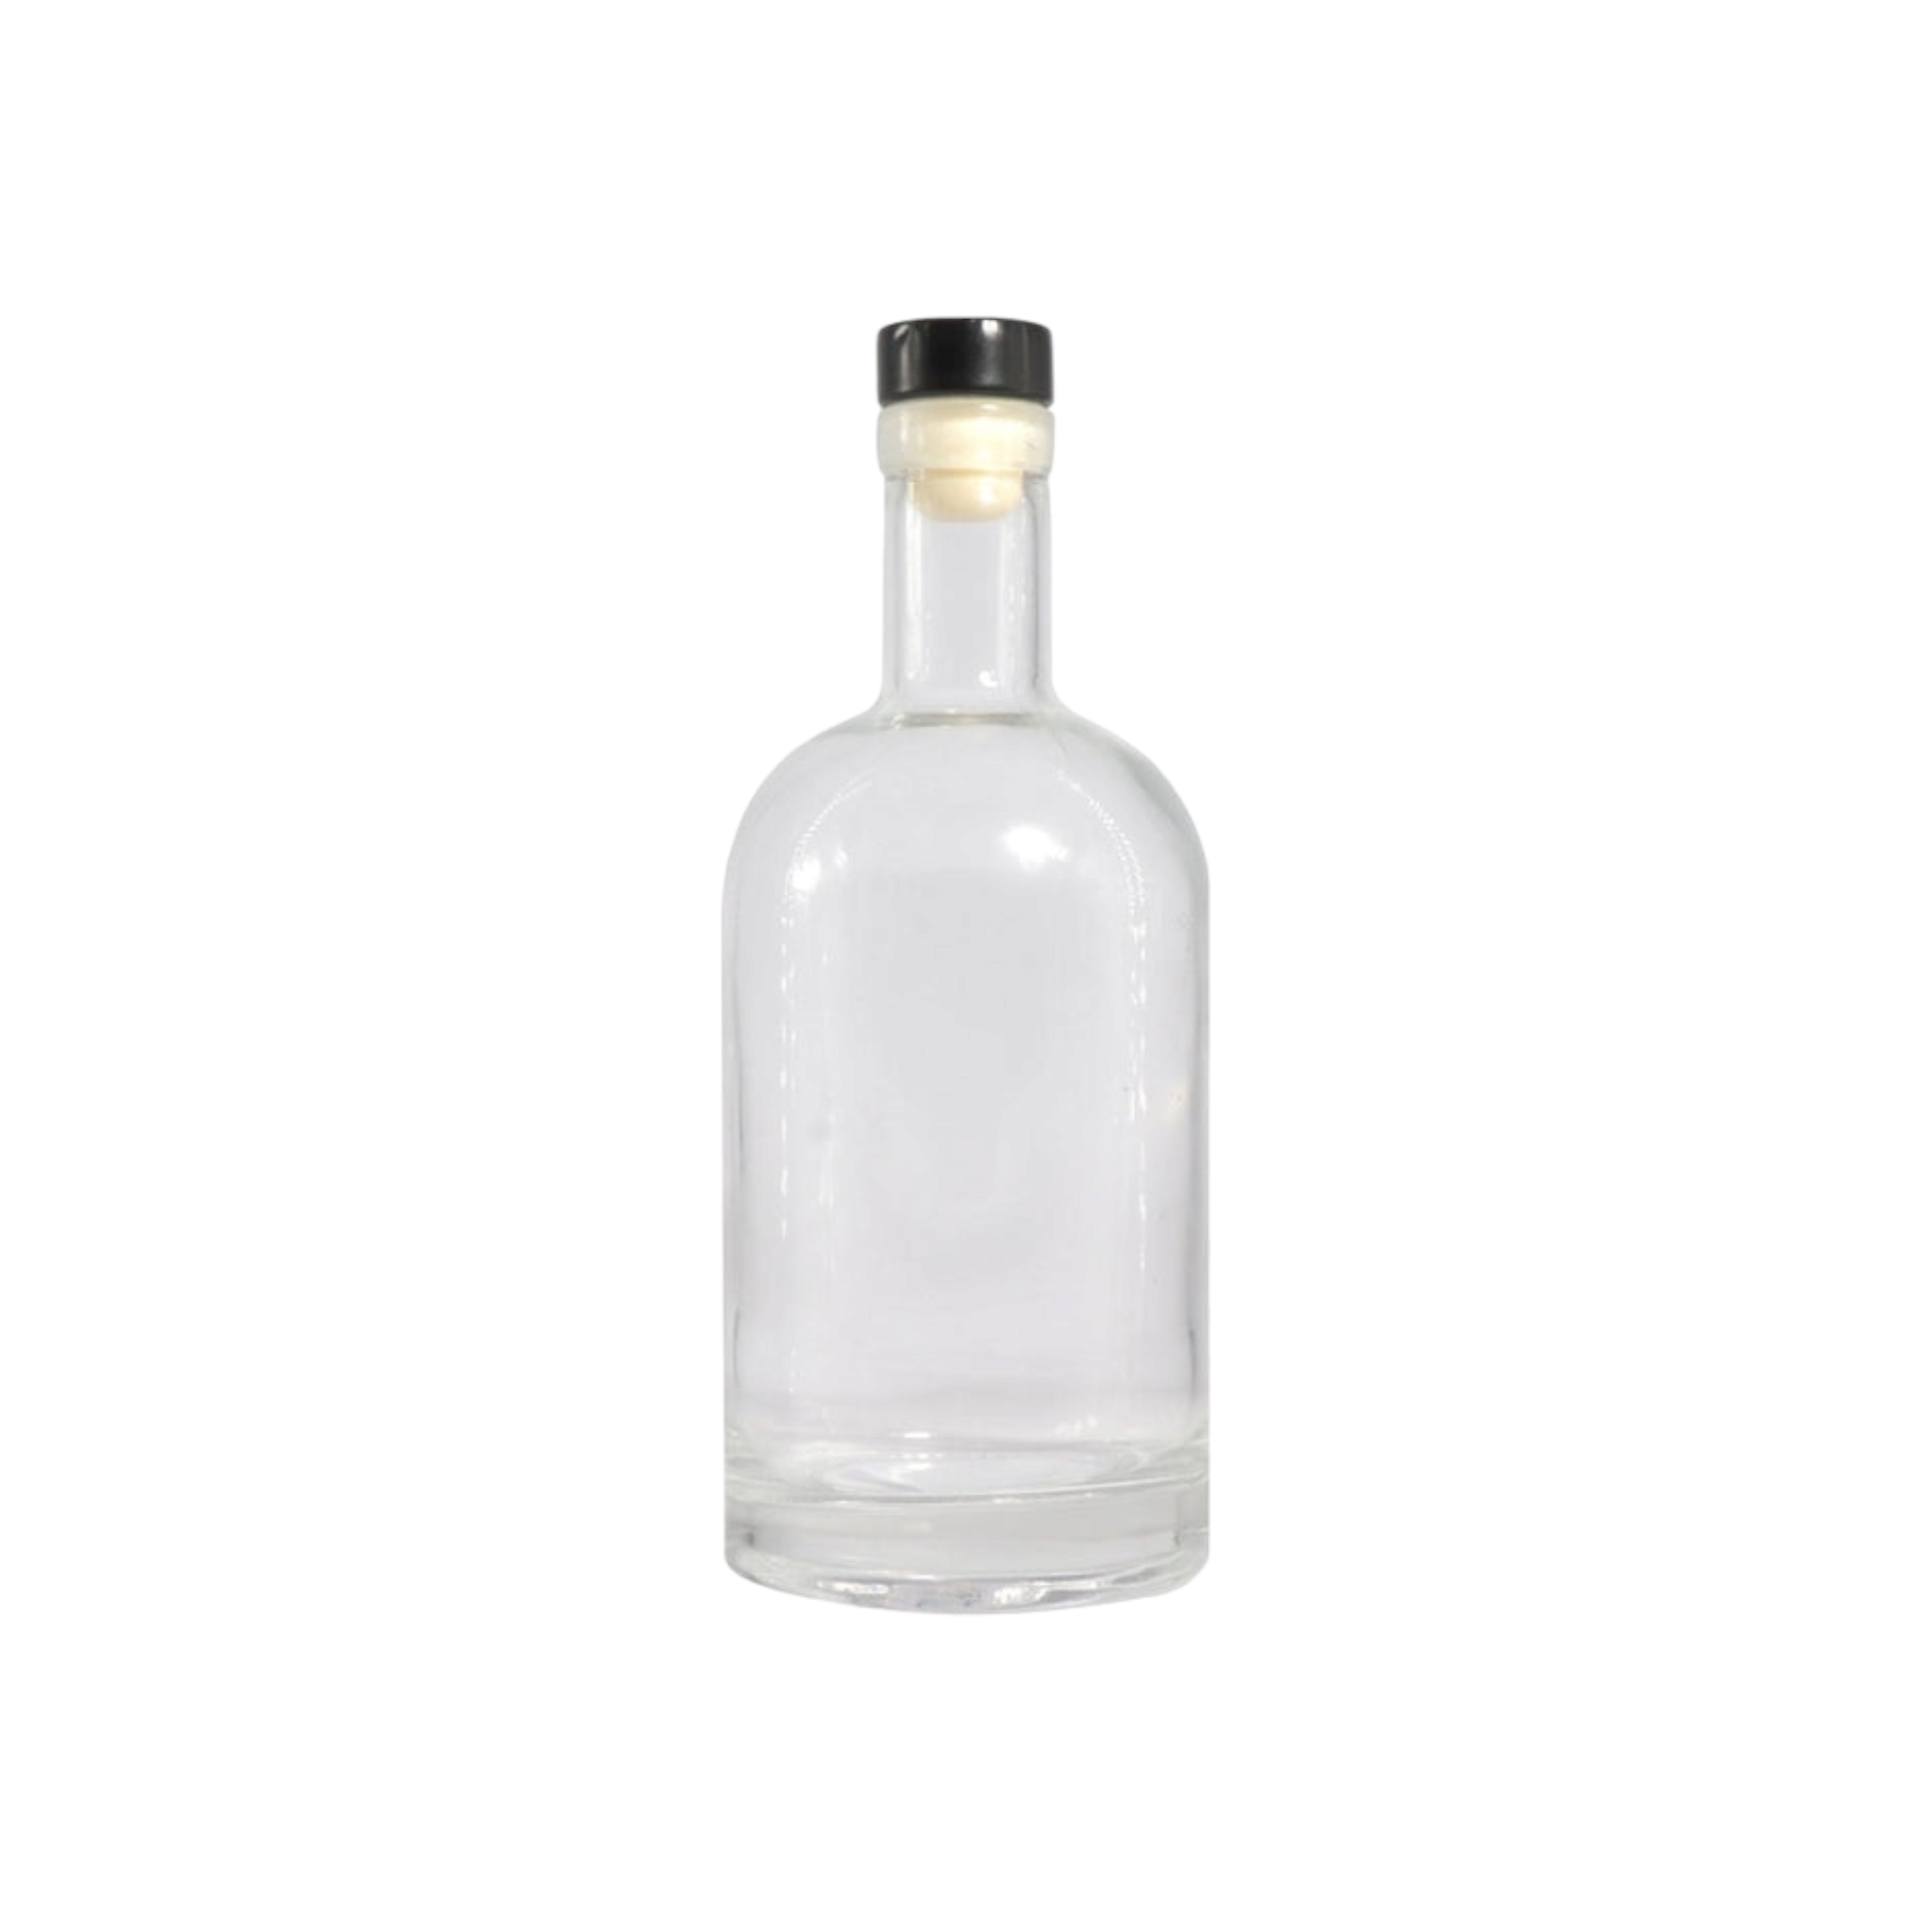 Regent Glass Gin Bottle 750ml with Black Stopper 26135